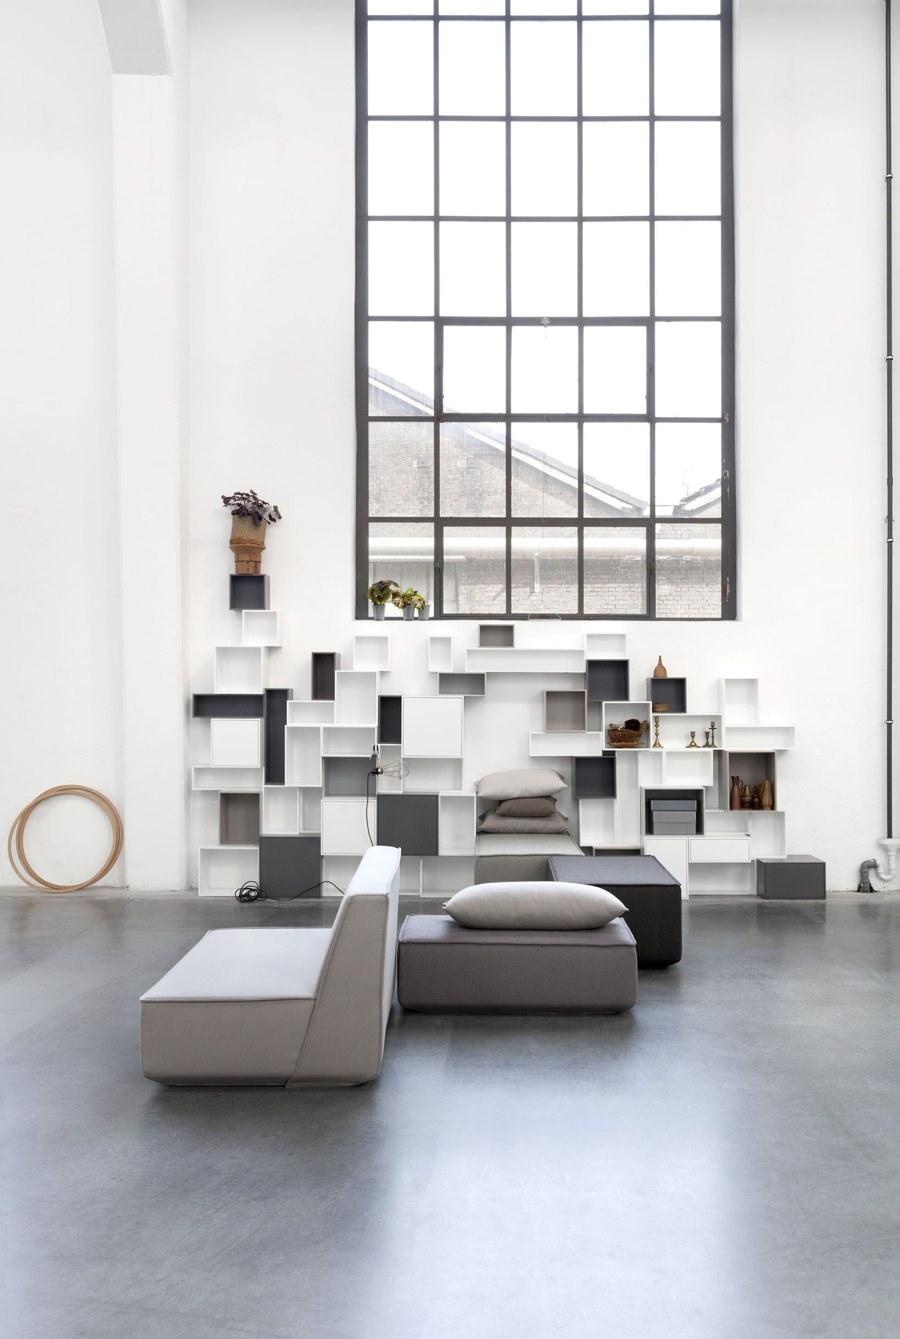 Cubit’s sofa: individual and versatile | Novità